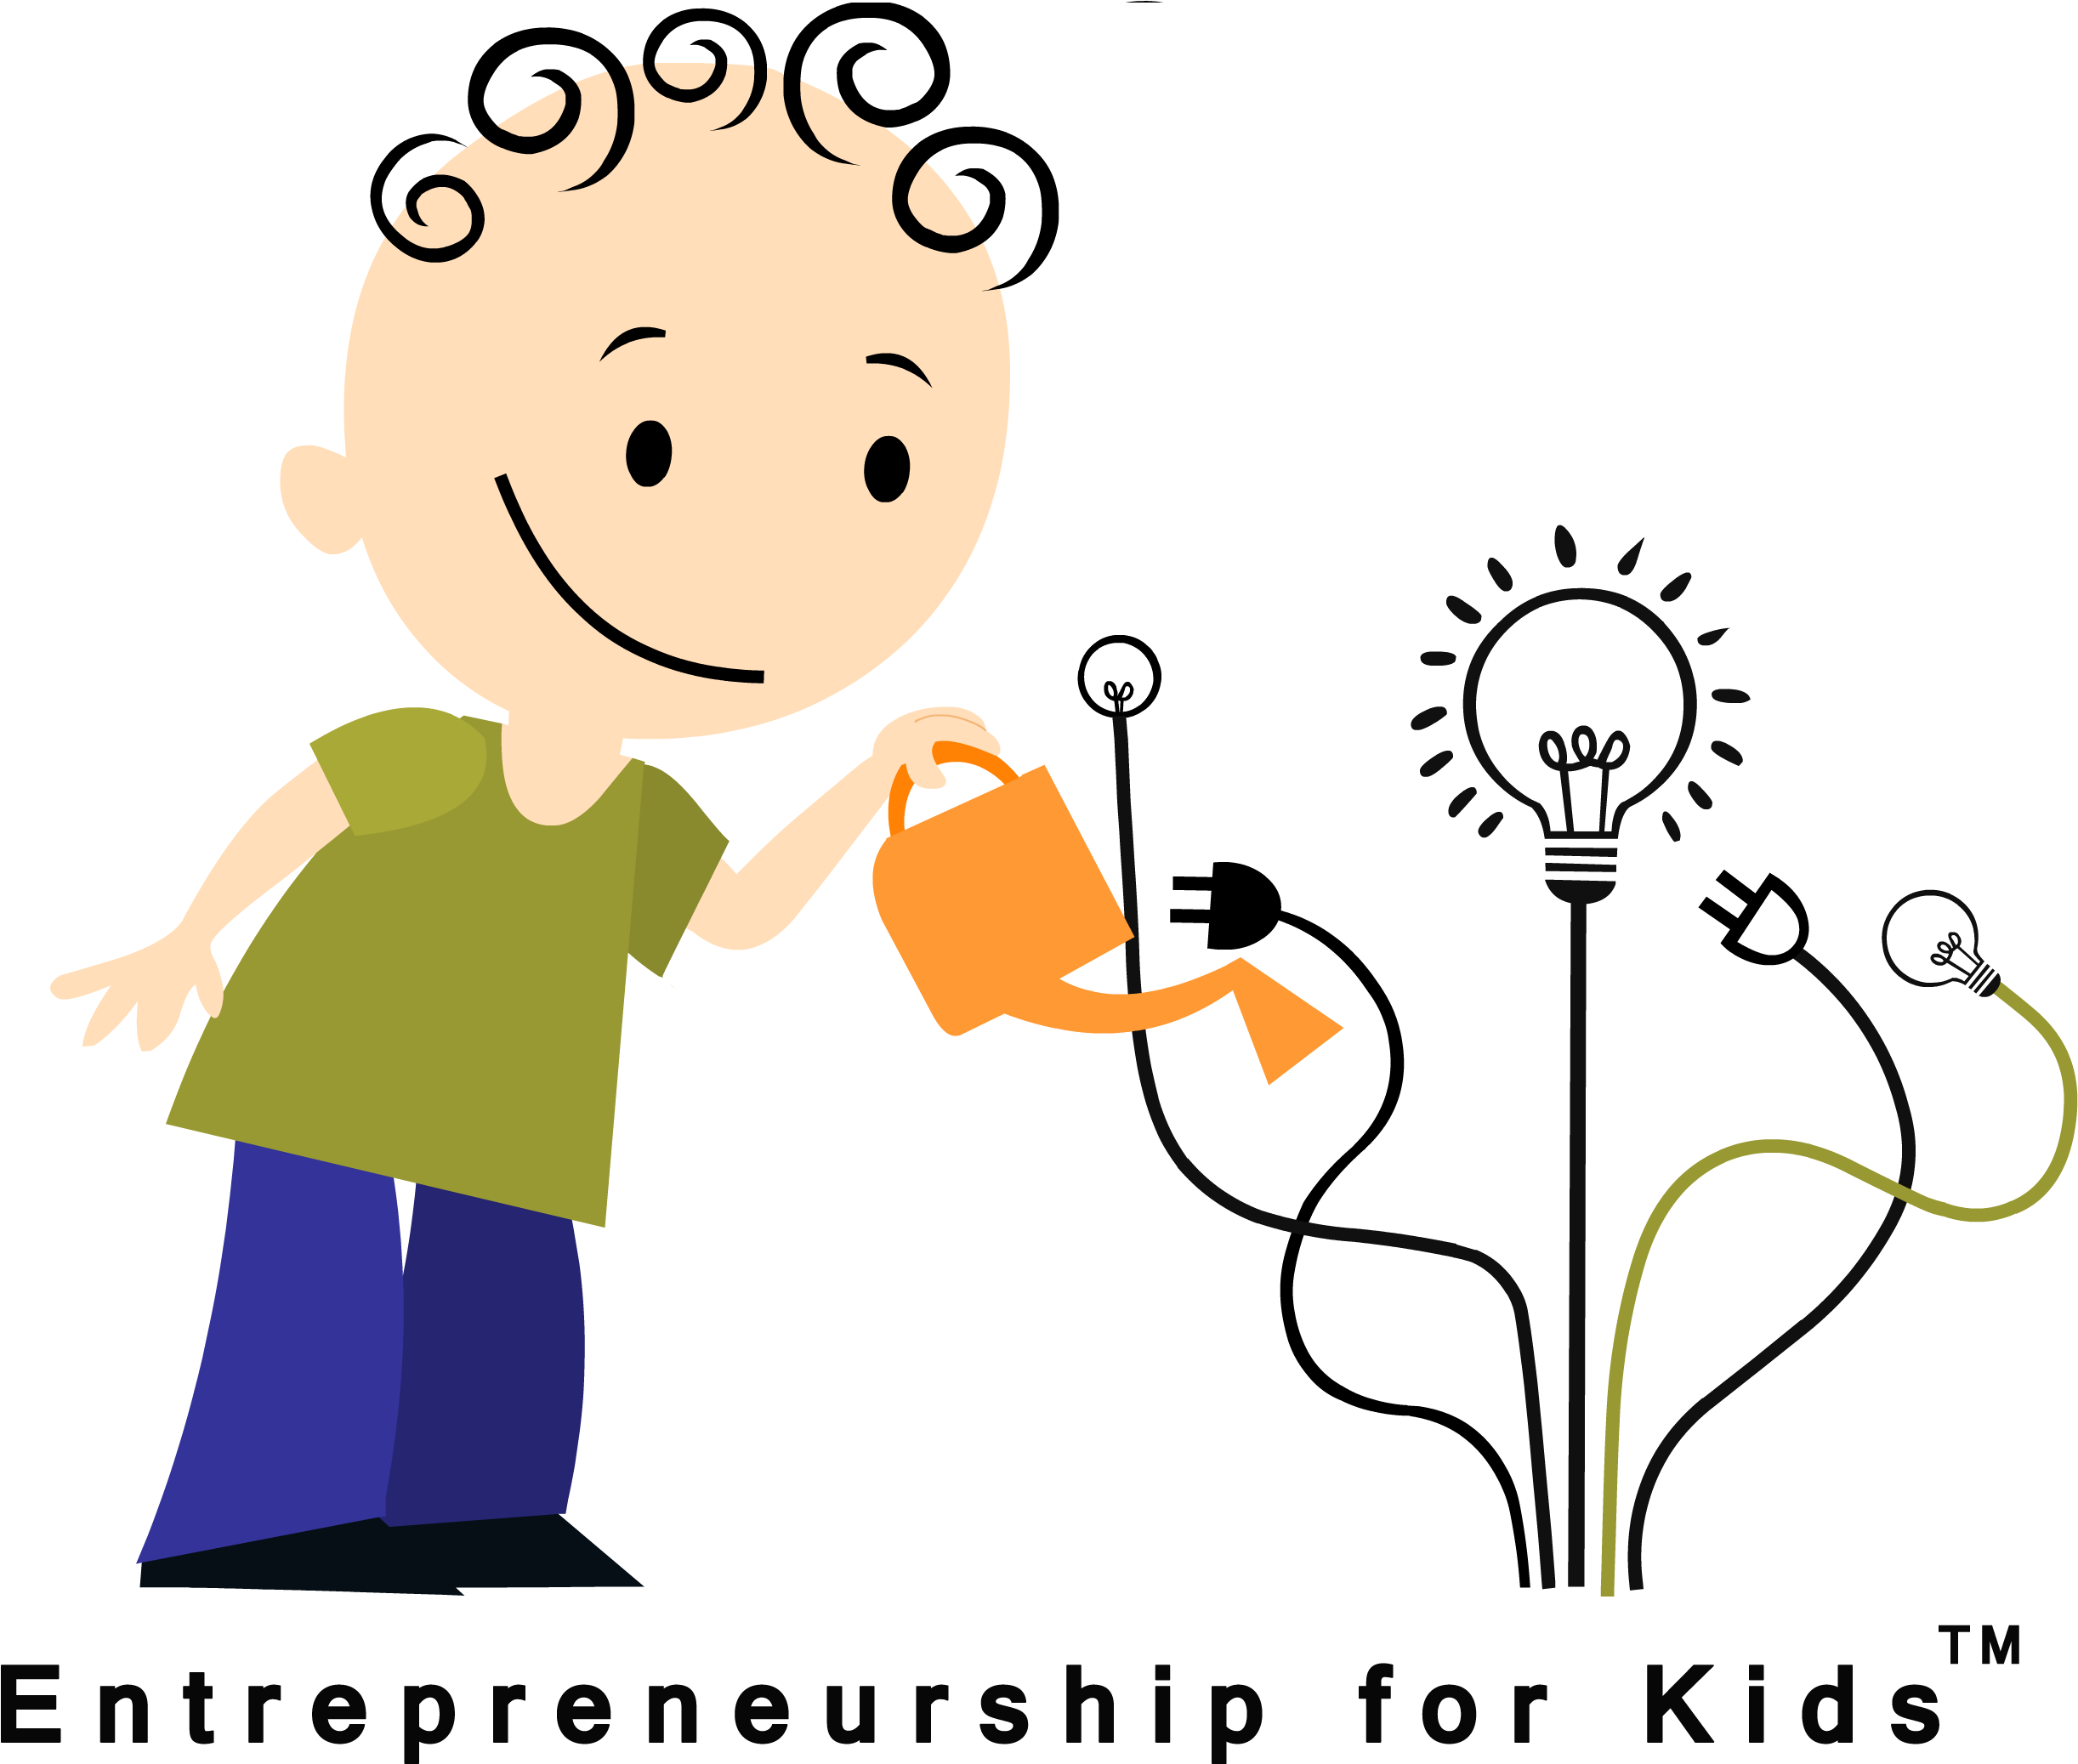 תכנית יזמות לילדים - Entrepreneurship For Kids Israel (2885x2200)